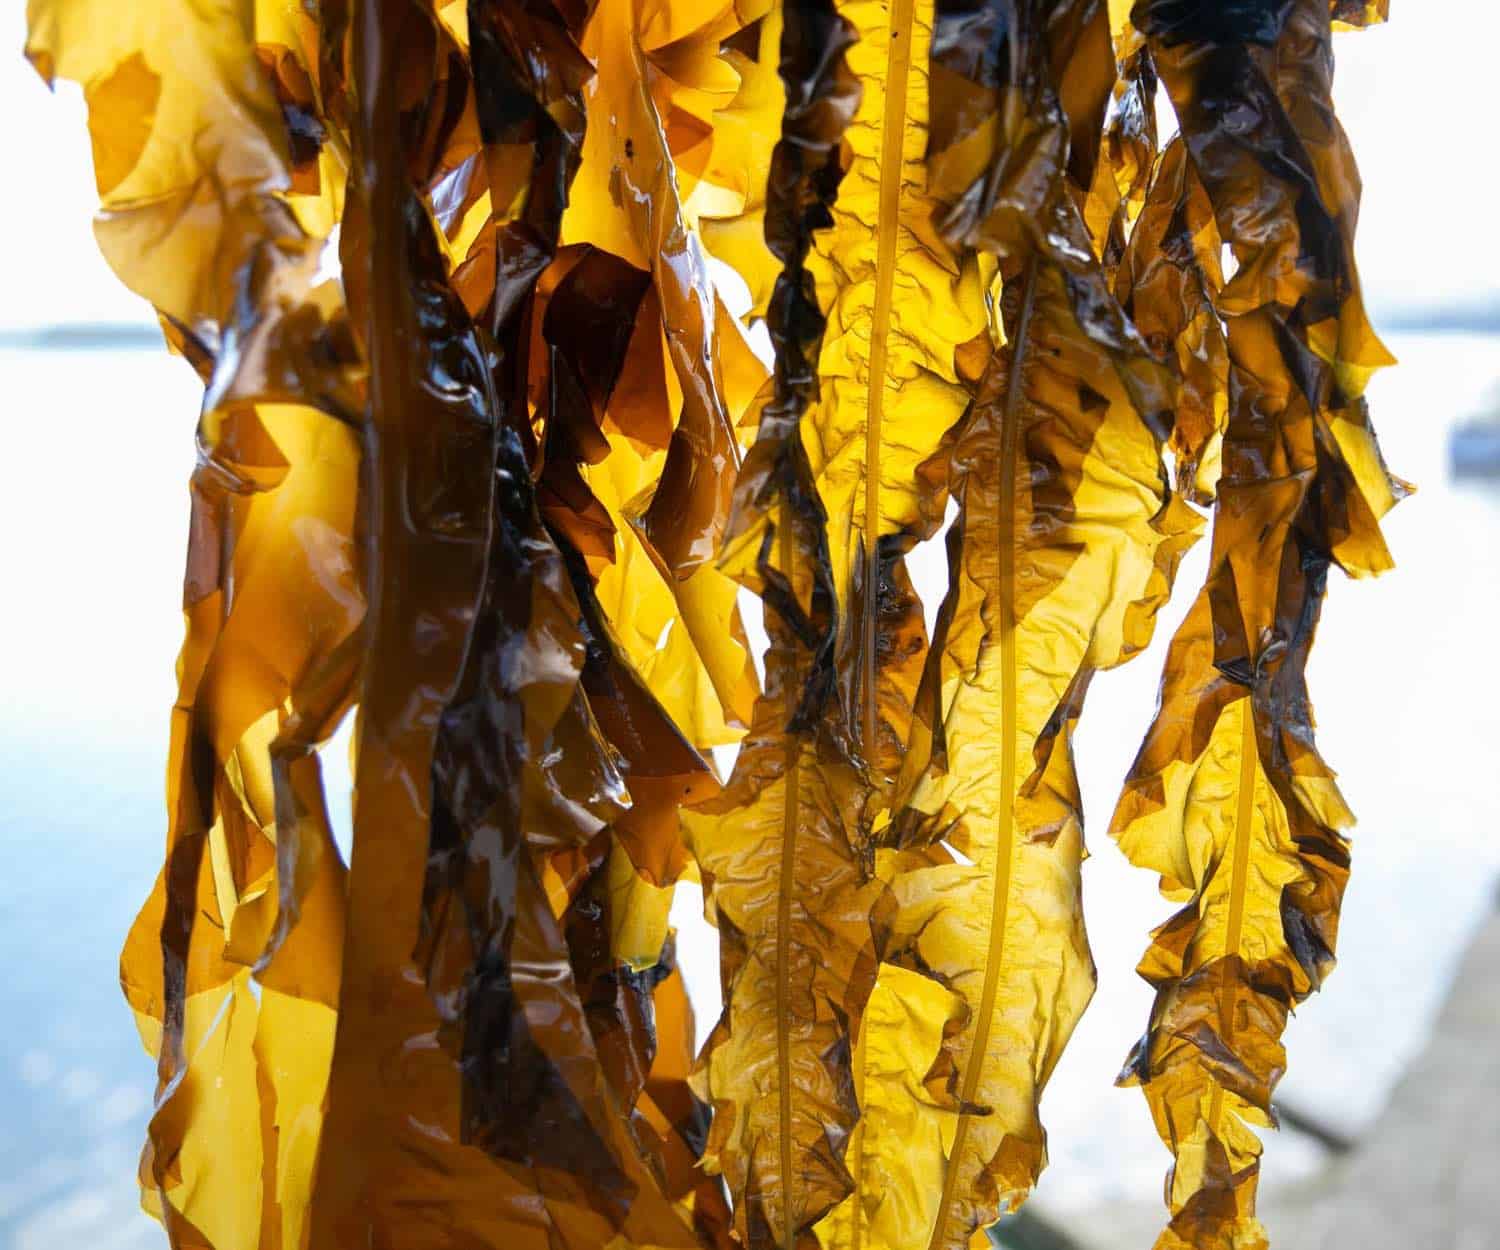 Blue Evolution Seaweed Sustainable Harvesting from Ocean in Alaska